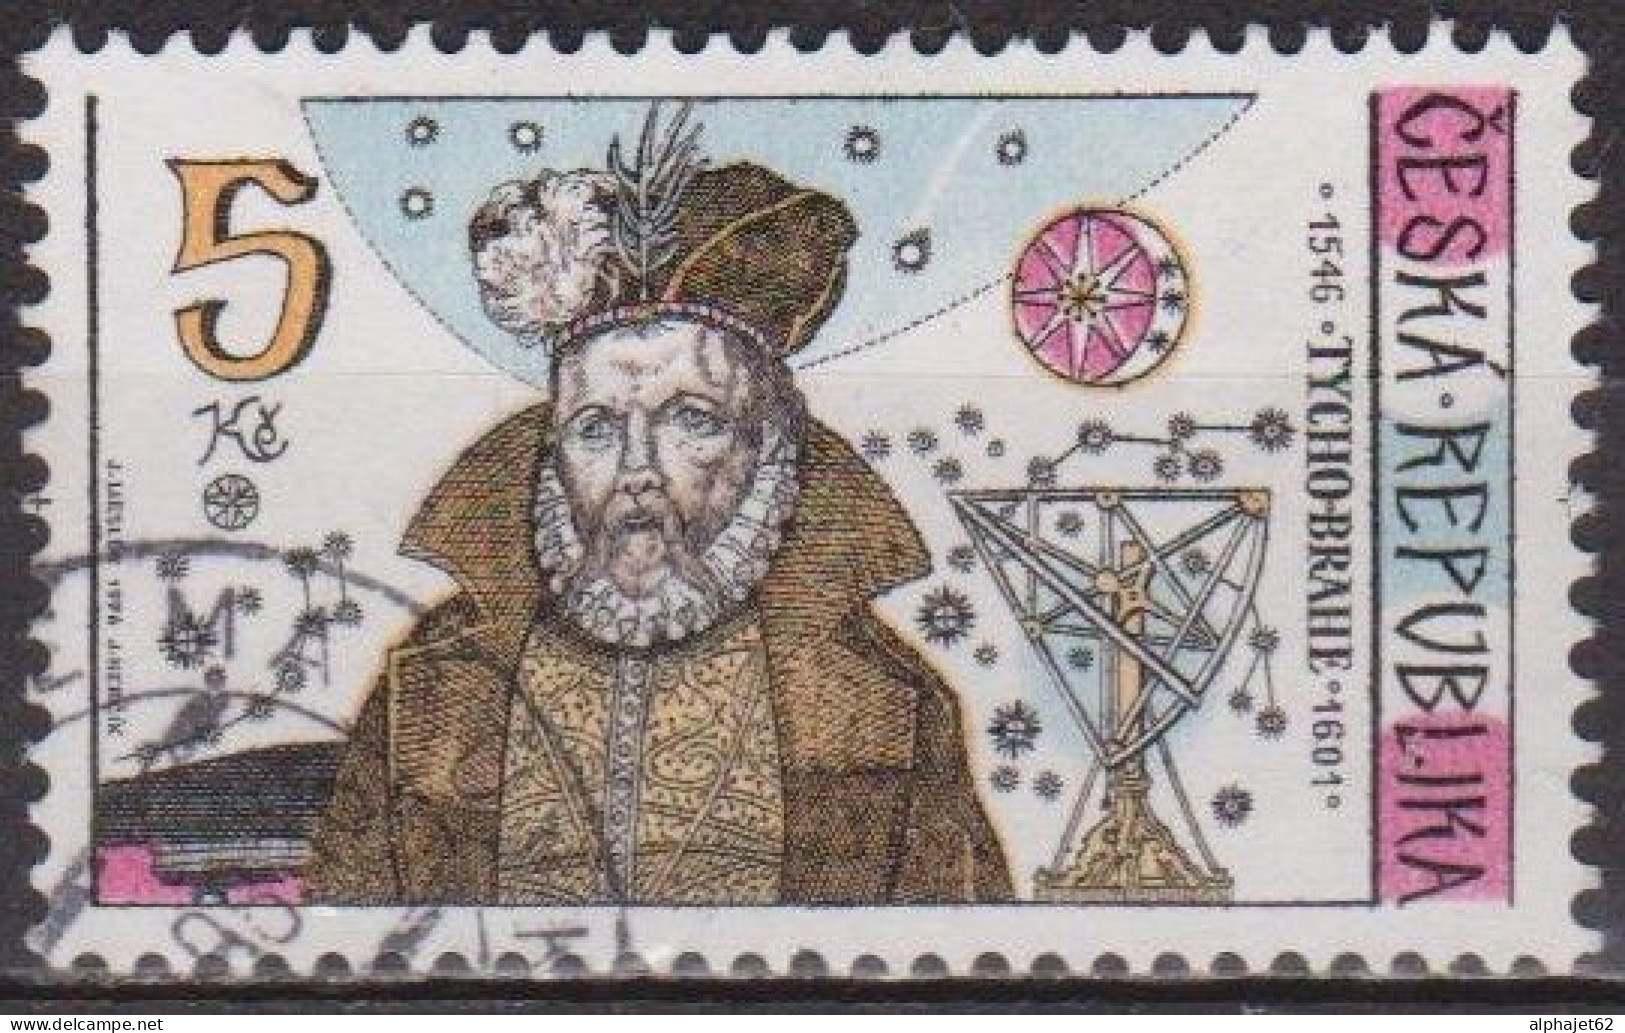 Sciences - TCHEQUIE - REPUBLIQUE TCHEQUE - Astronome Danois T. Brahe - N° 123 - 1996 - Used Stamps